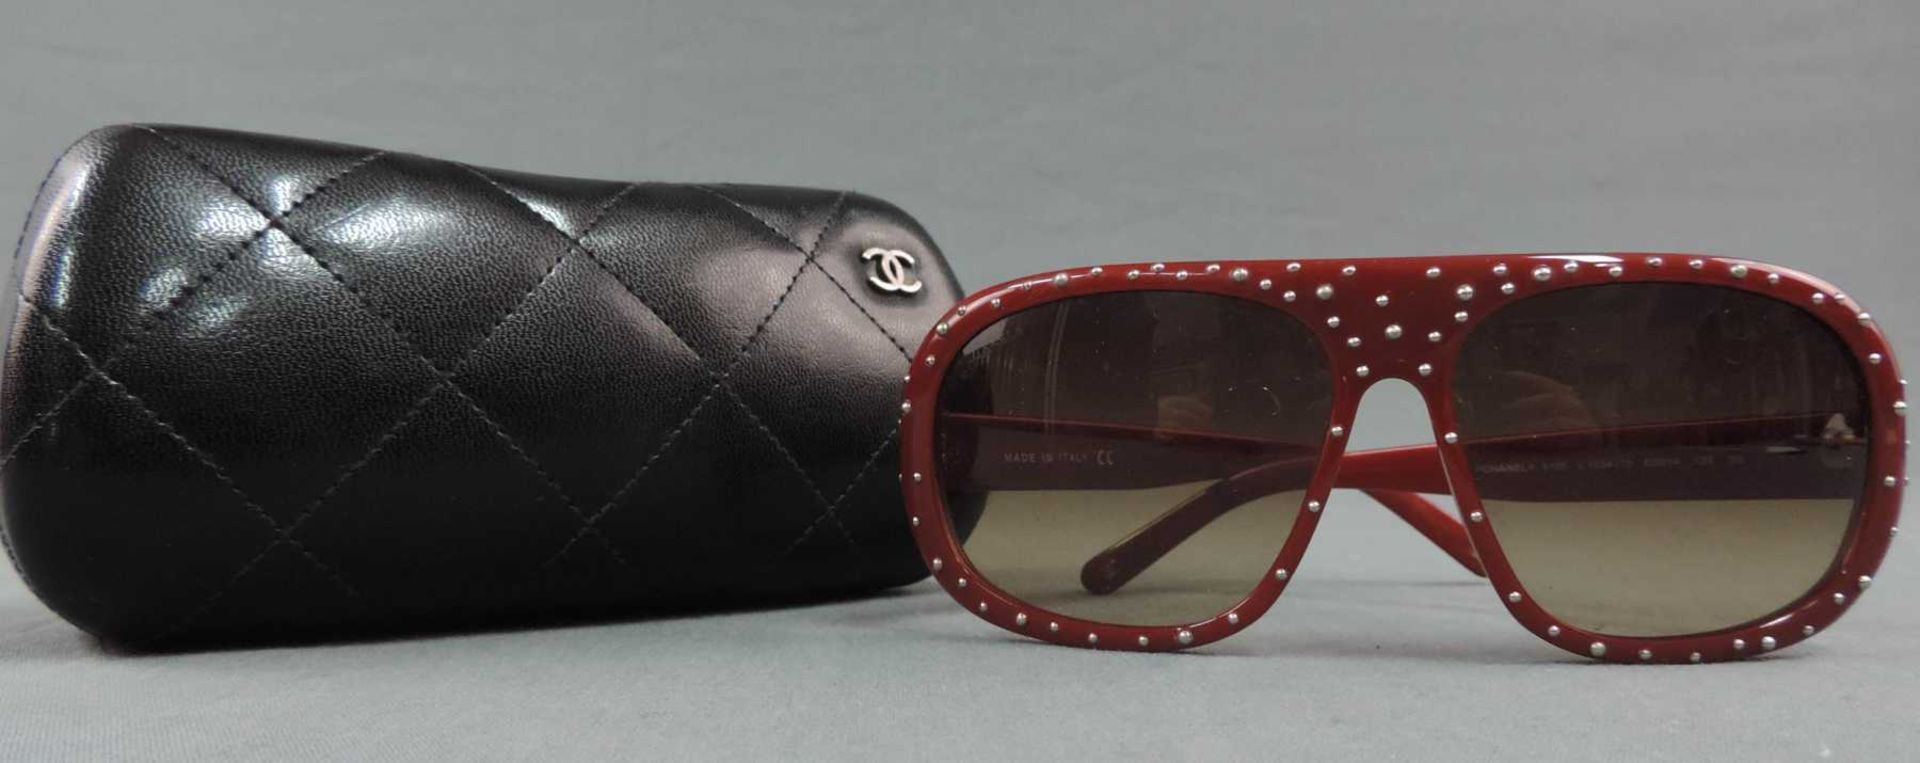 Chanel Sonnenbrille. Mit Brillenetui. Made in Italy. Gebrauchsspuren. Chanel sunglasses. With